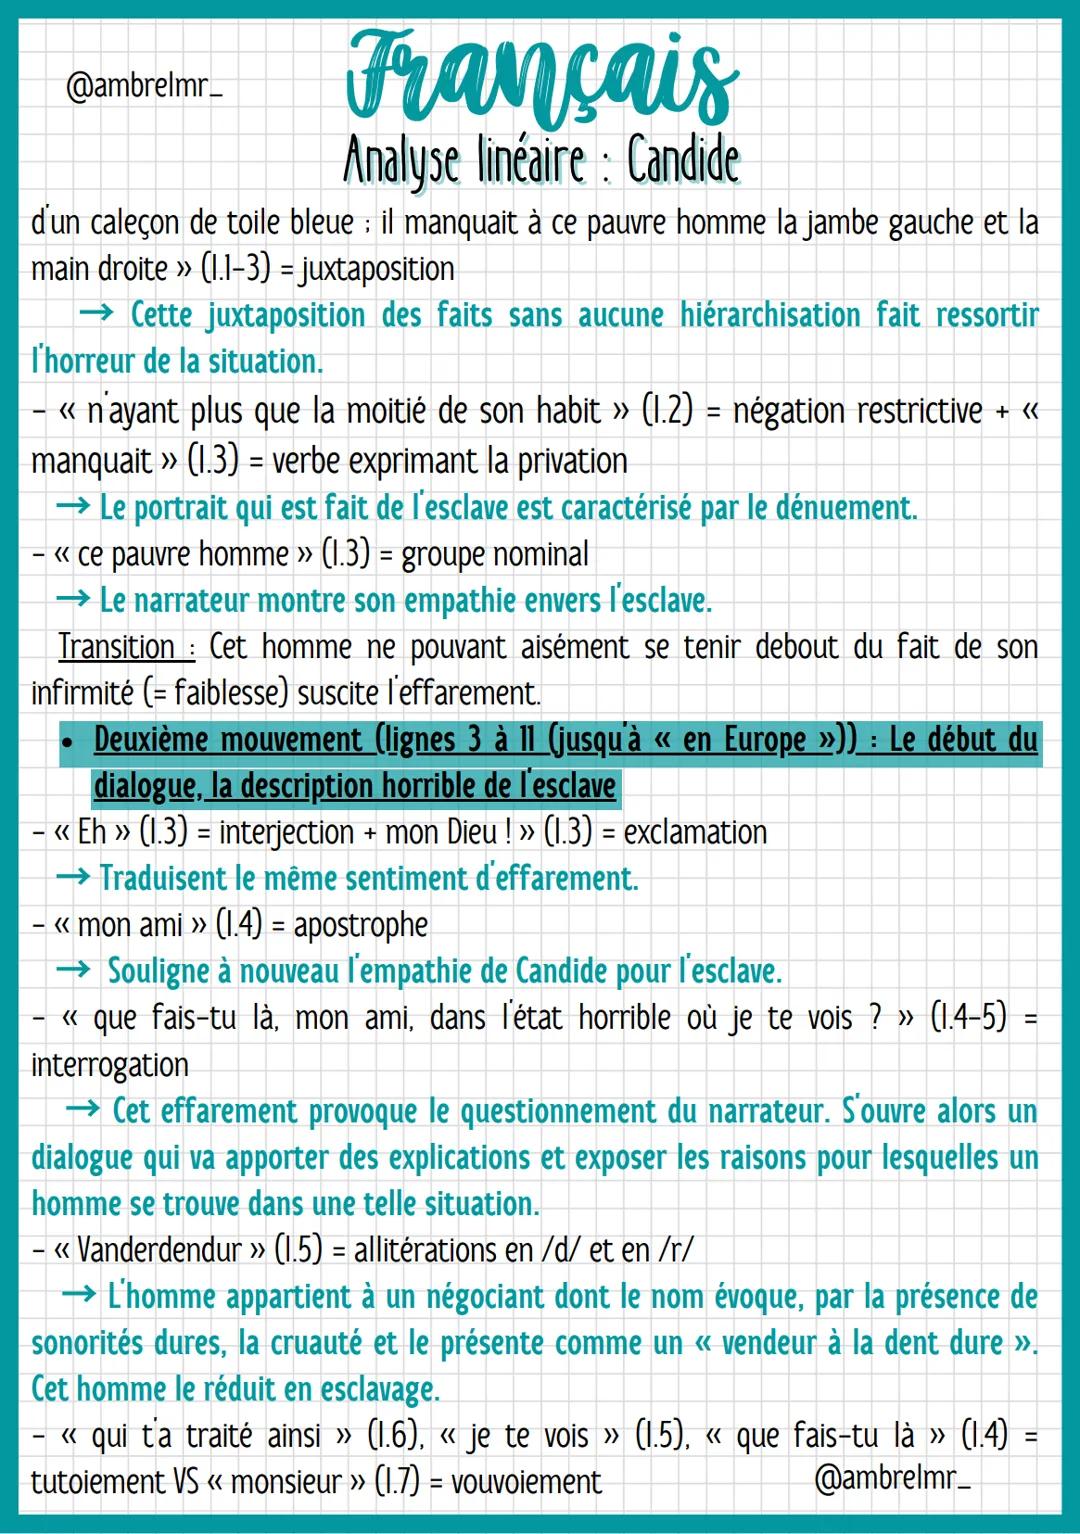 @ambrelmr_
INTRODUCTION
Français
Analyse linéaire: Candide
Présentation du texte :
→ Auteur : Voltaire est un auteur du XVIIIe siècle qui s'